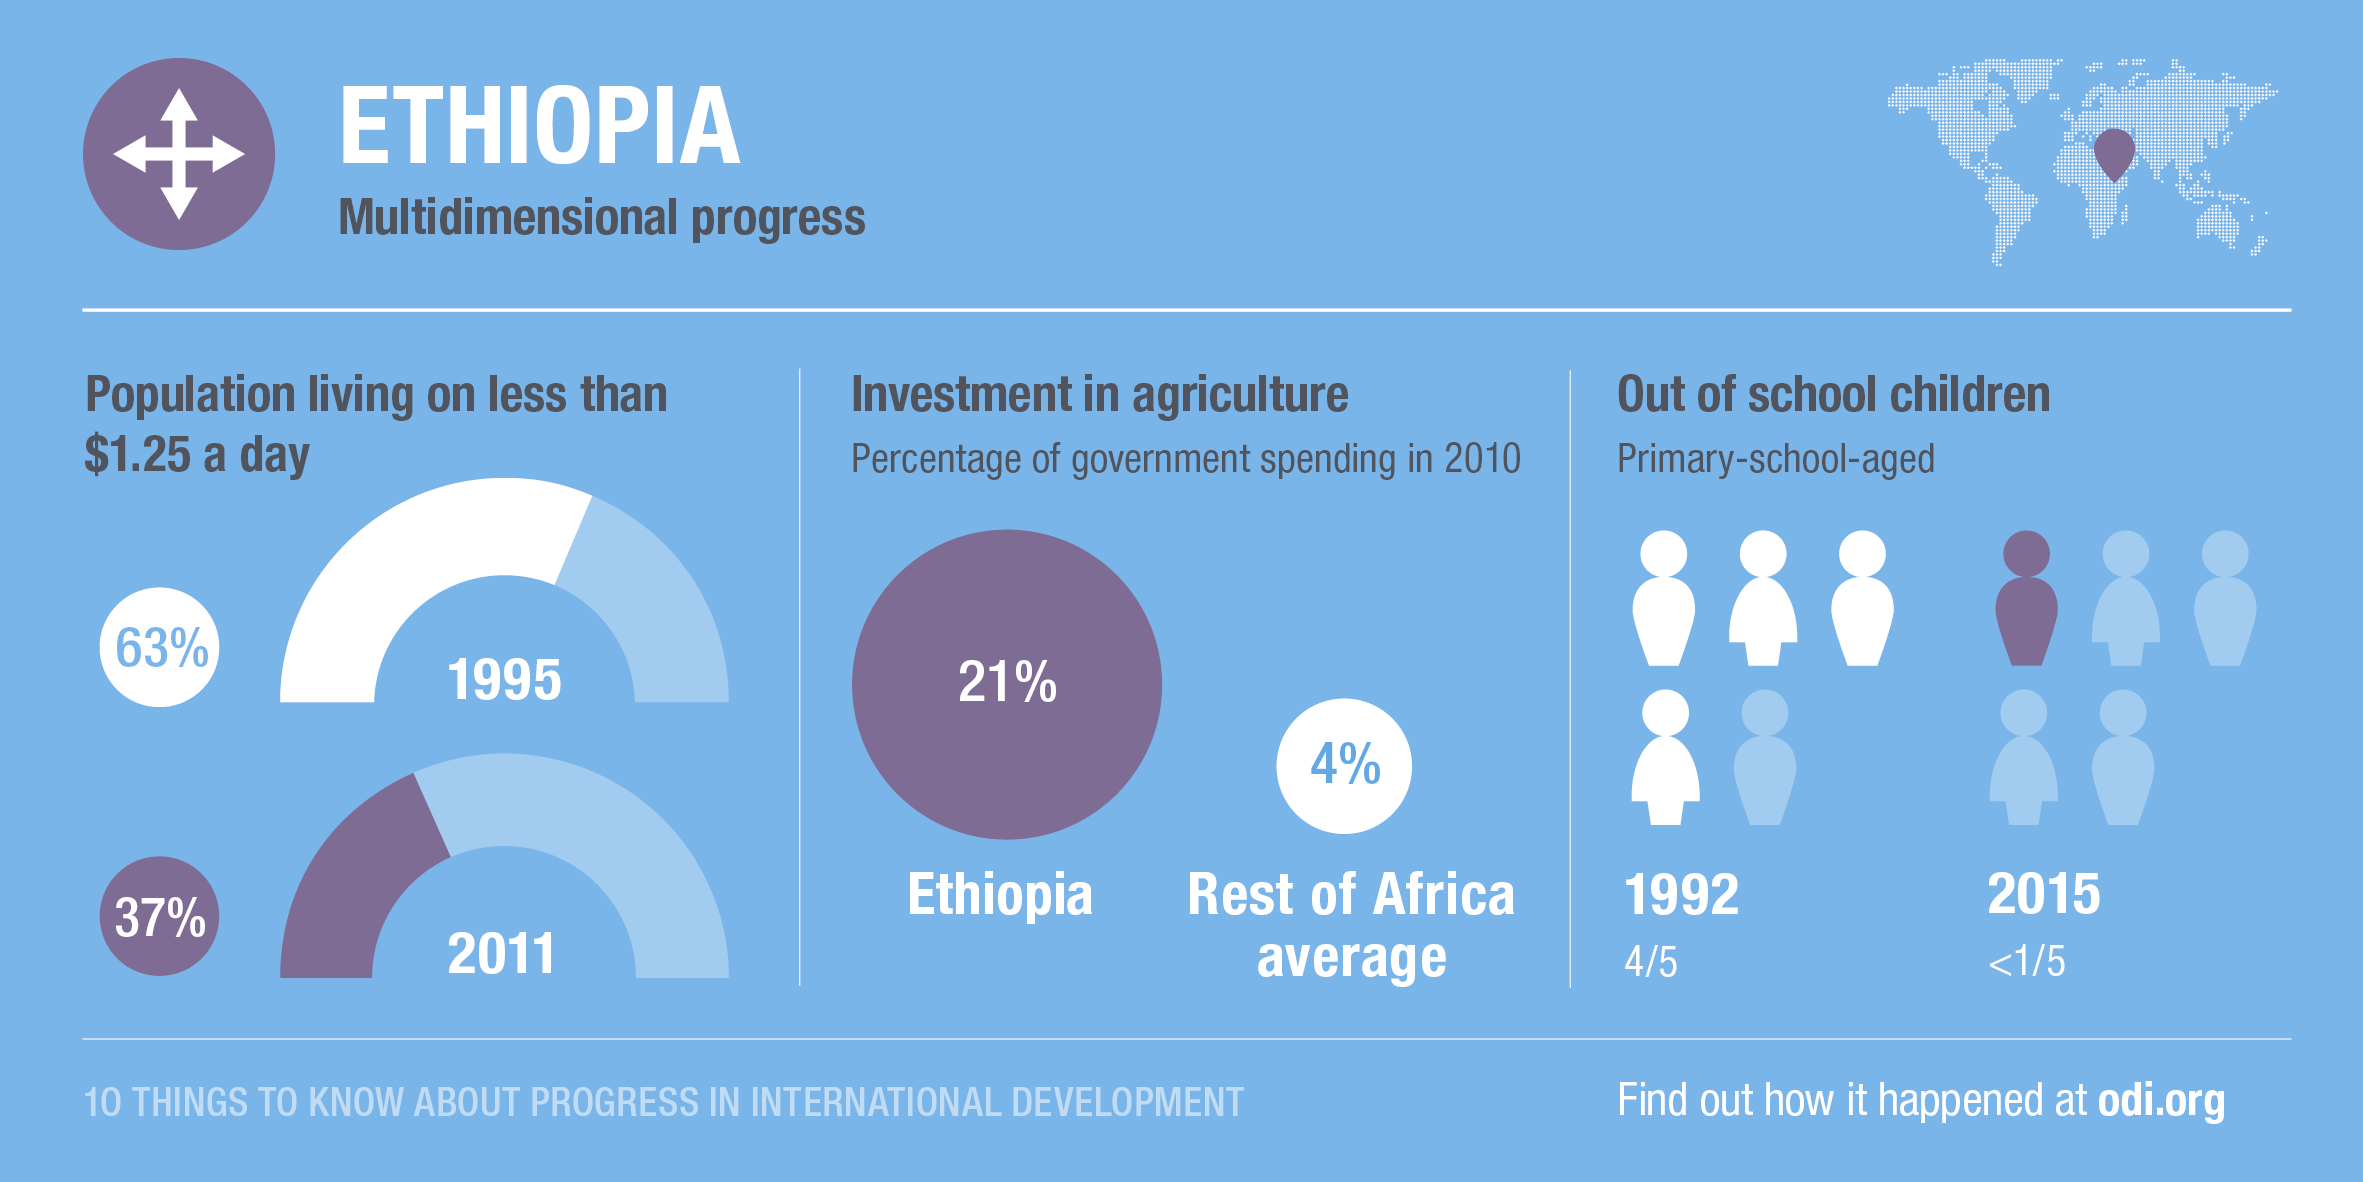 Ethiopia's progress across dimensions